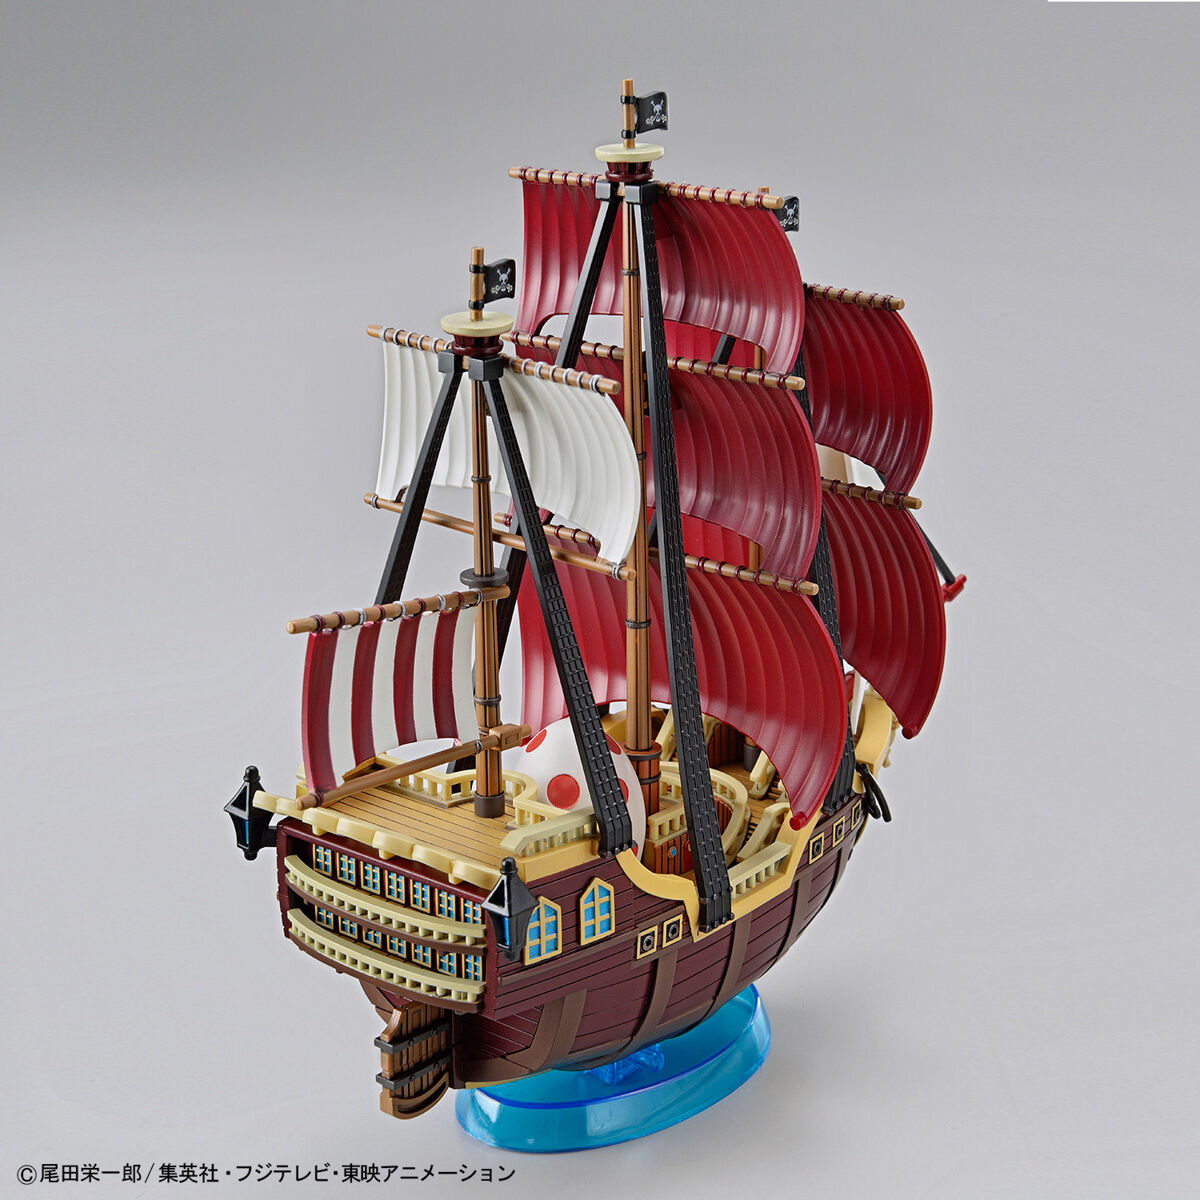 ワンピース偉大なる船(グランドシップ)コレクション オーロ・ジャクソン号 03